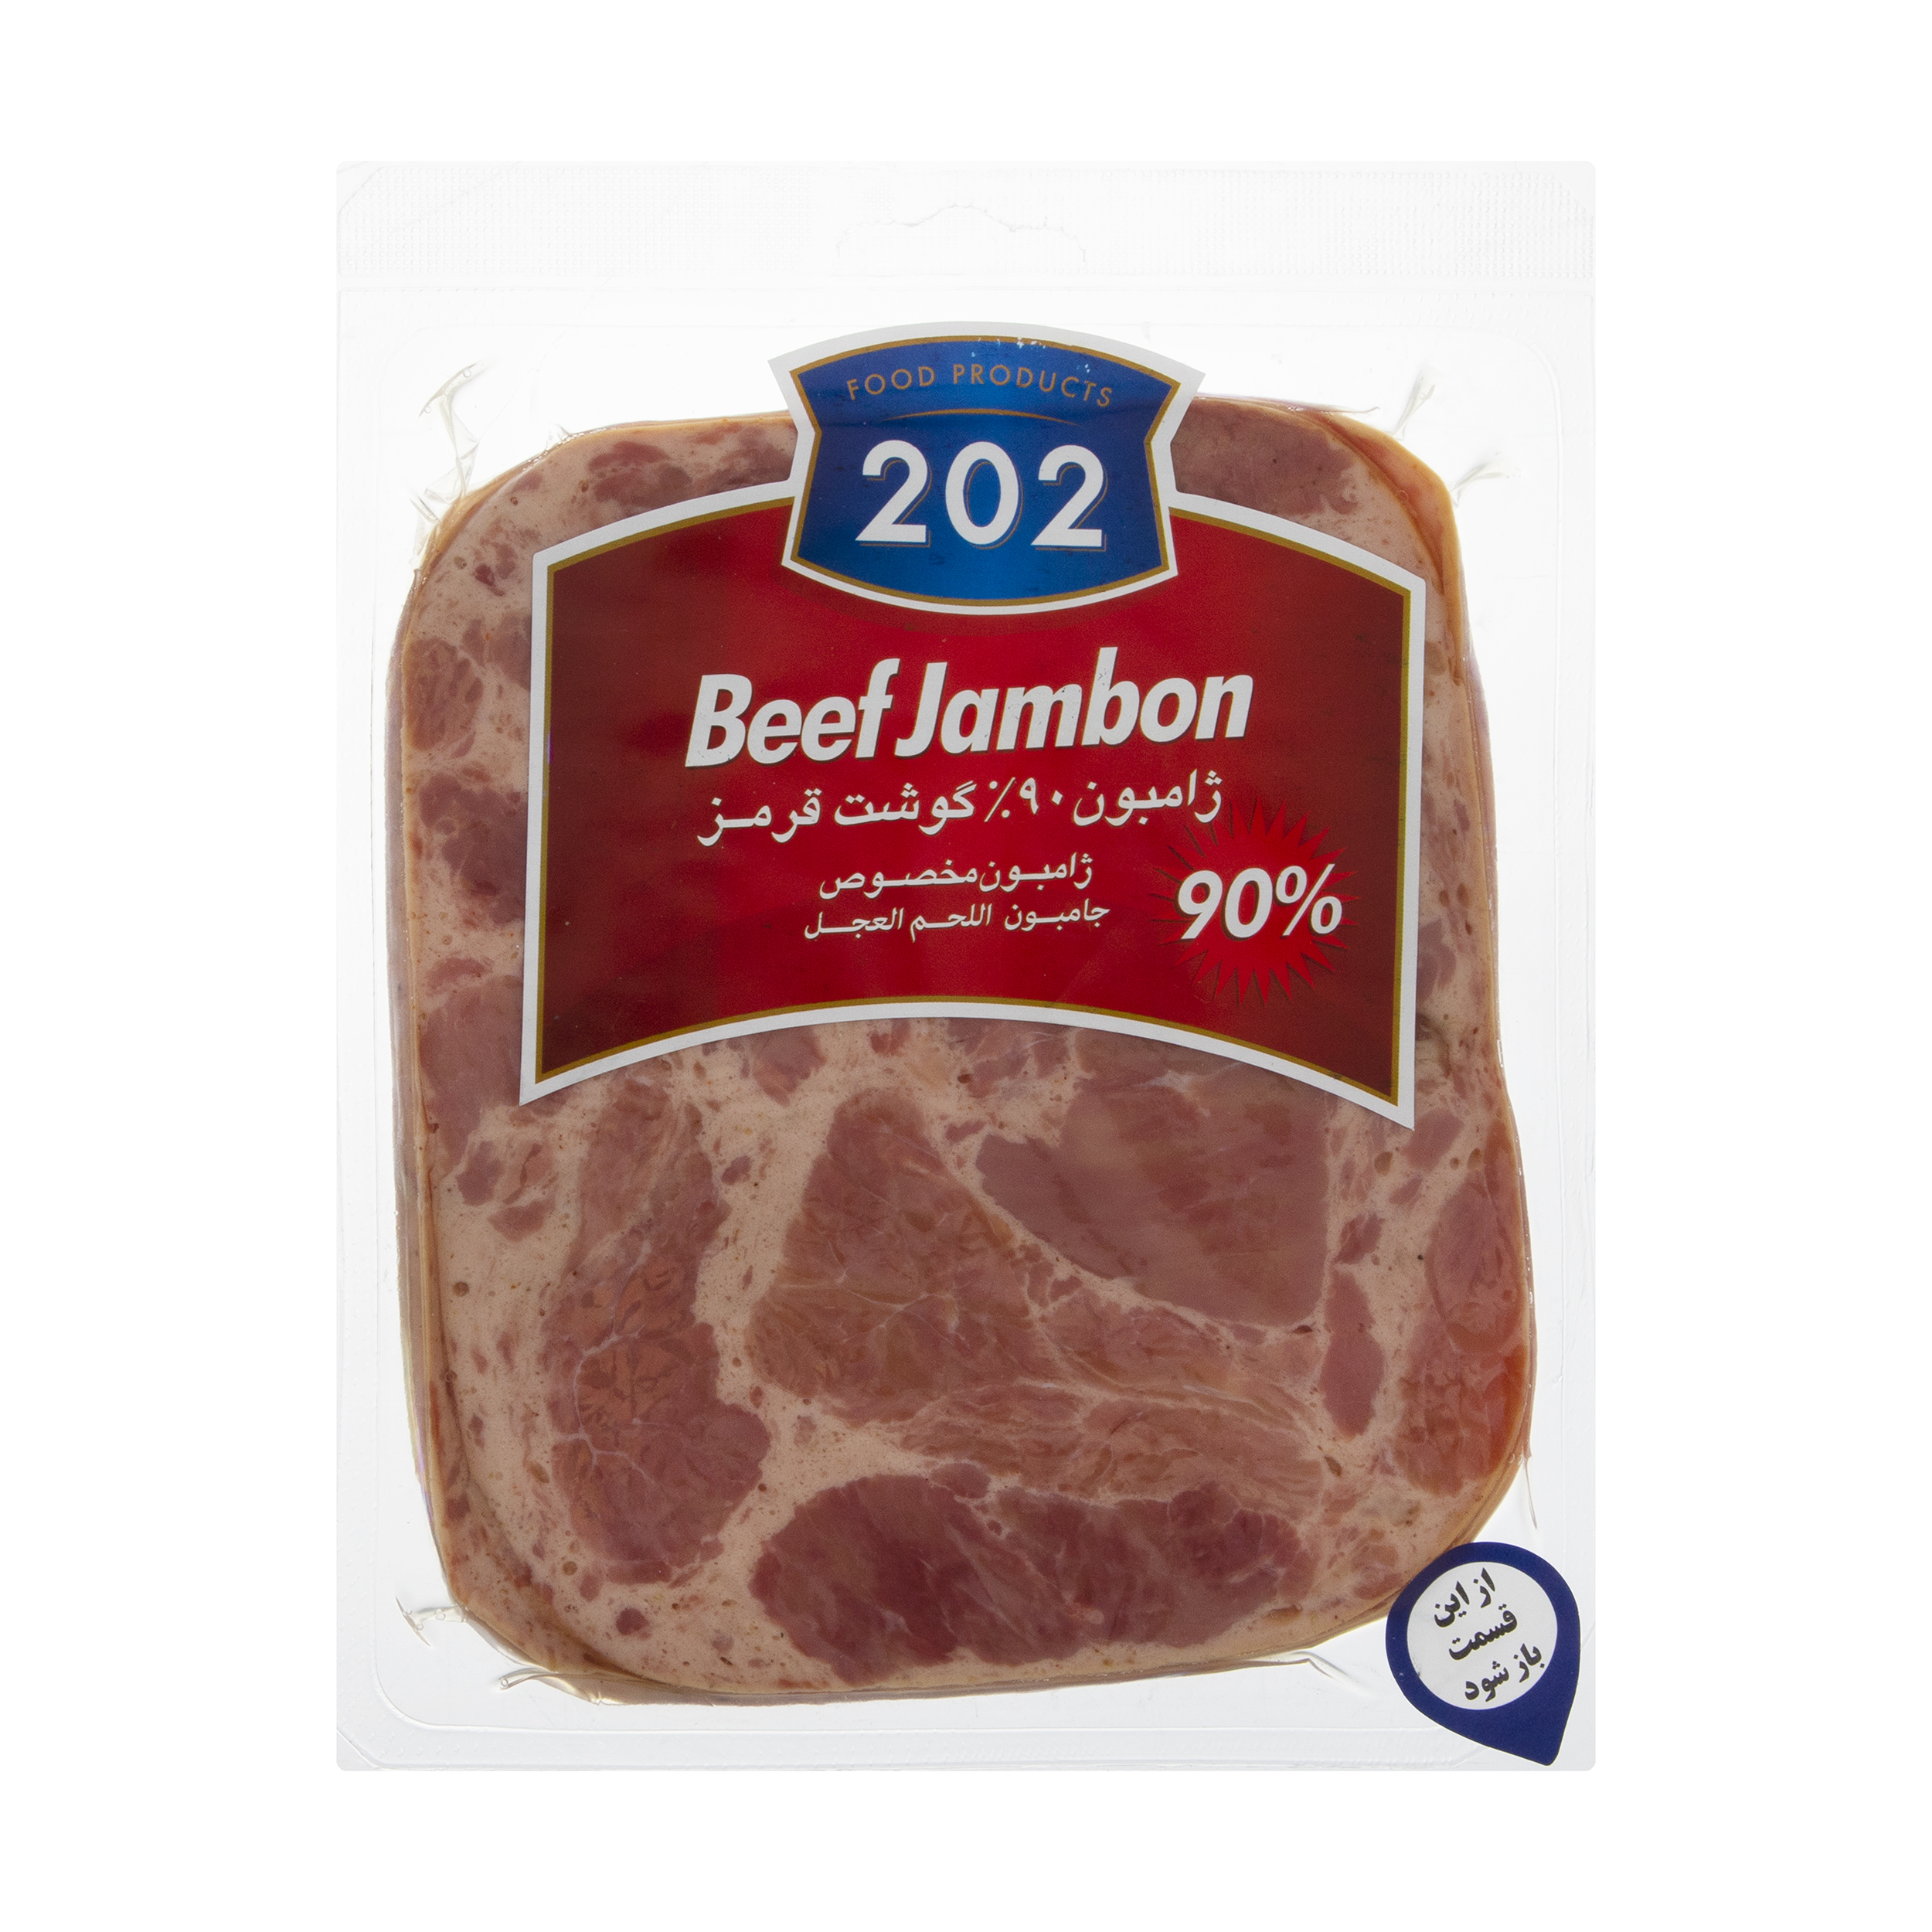 ژامبون مخصوص 90 درصد گوشت قرمز 202 - 300 گرم